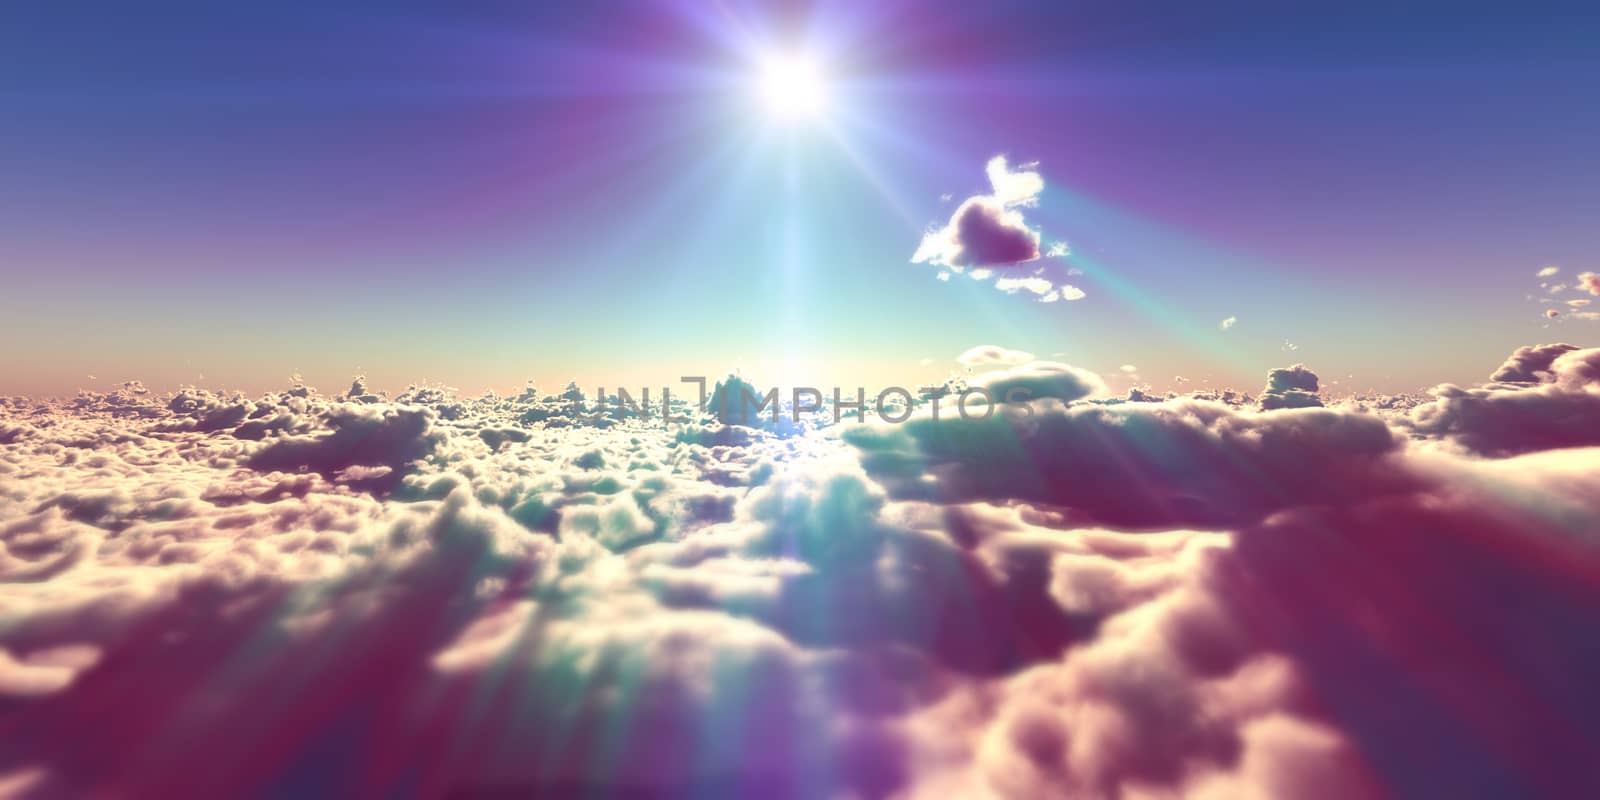 fly above clouds sunset landscape, 3d render illustration